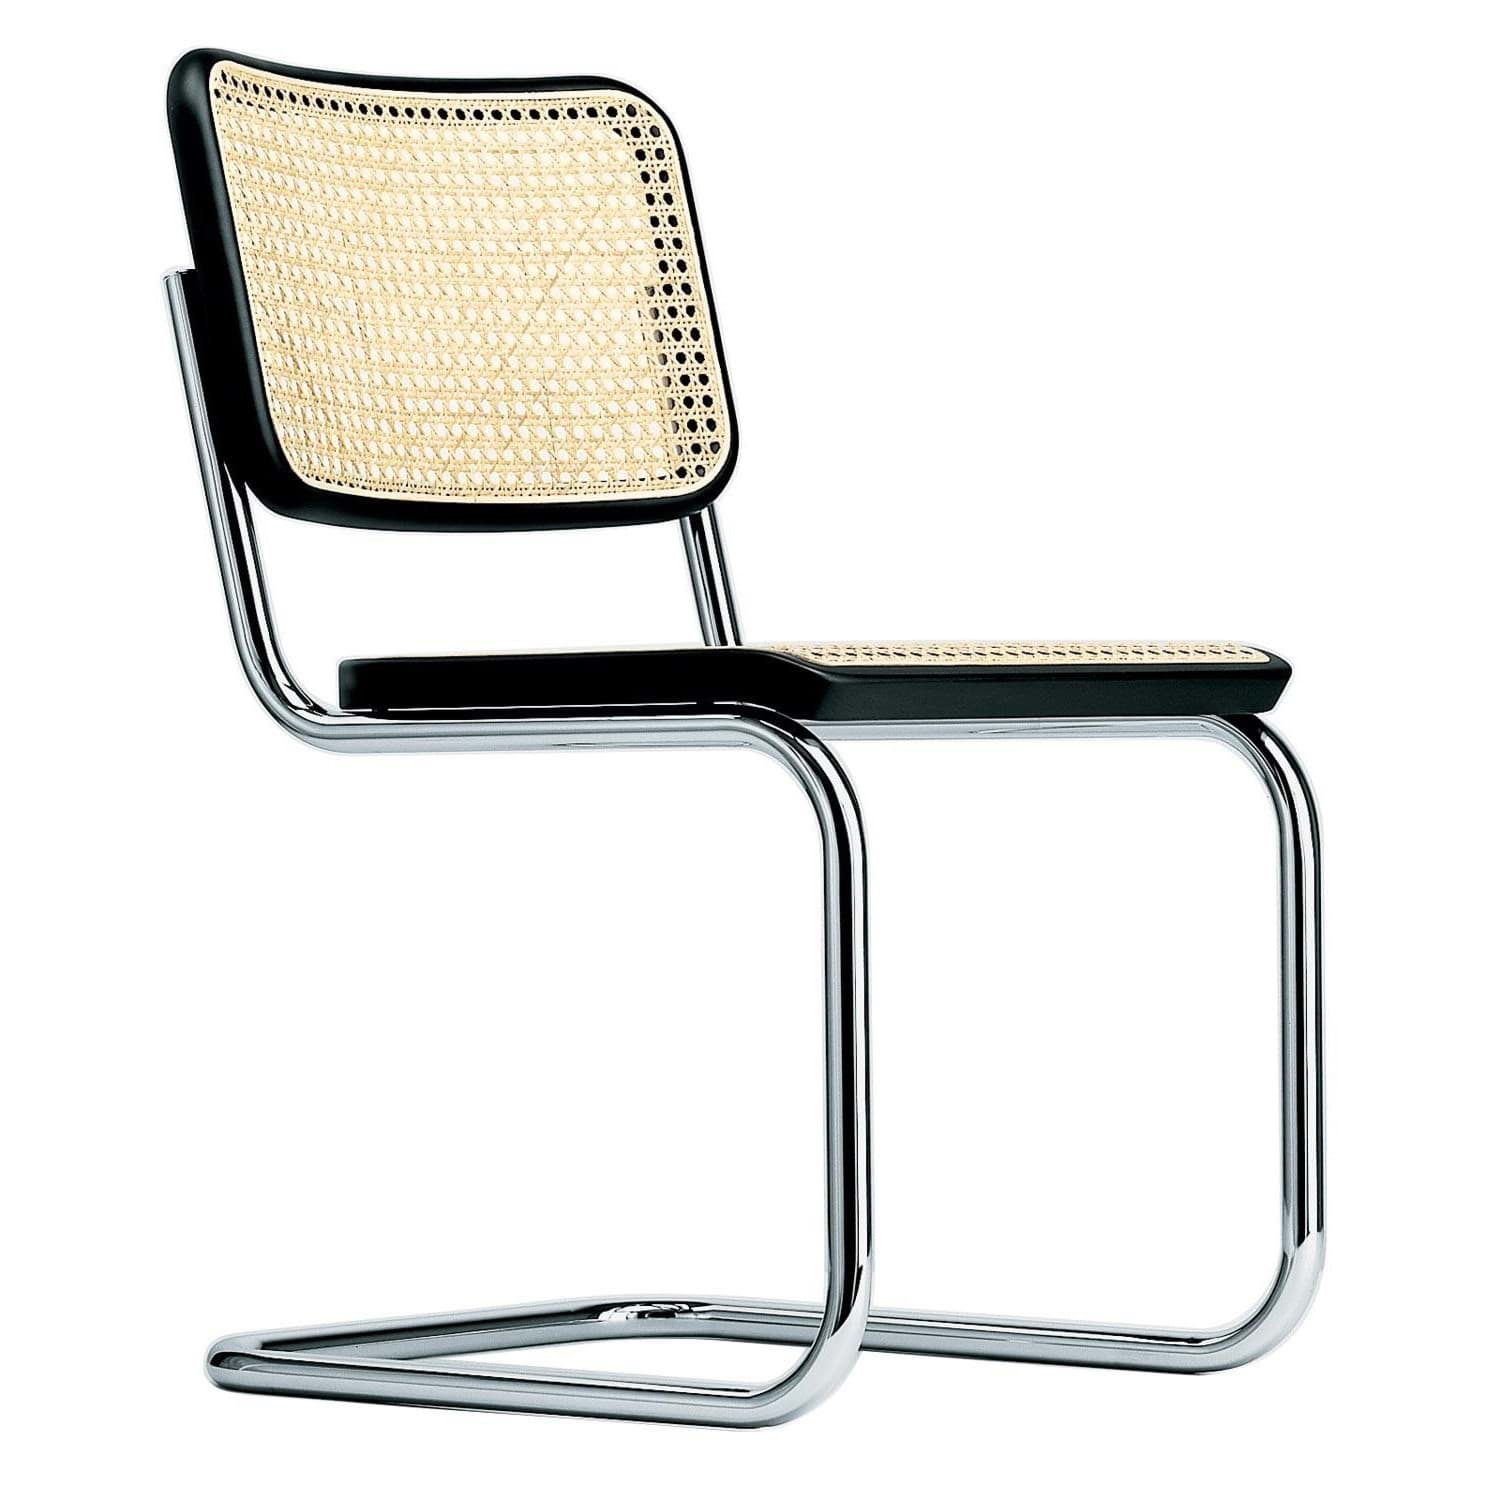 S 32 V कैंटिलीवर कुर्सी - Marcel Breuer की तस्वीर